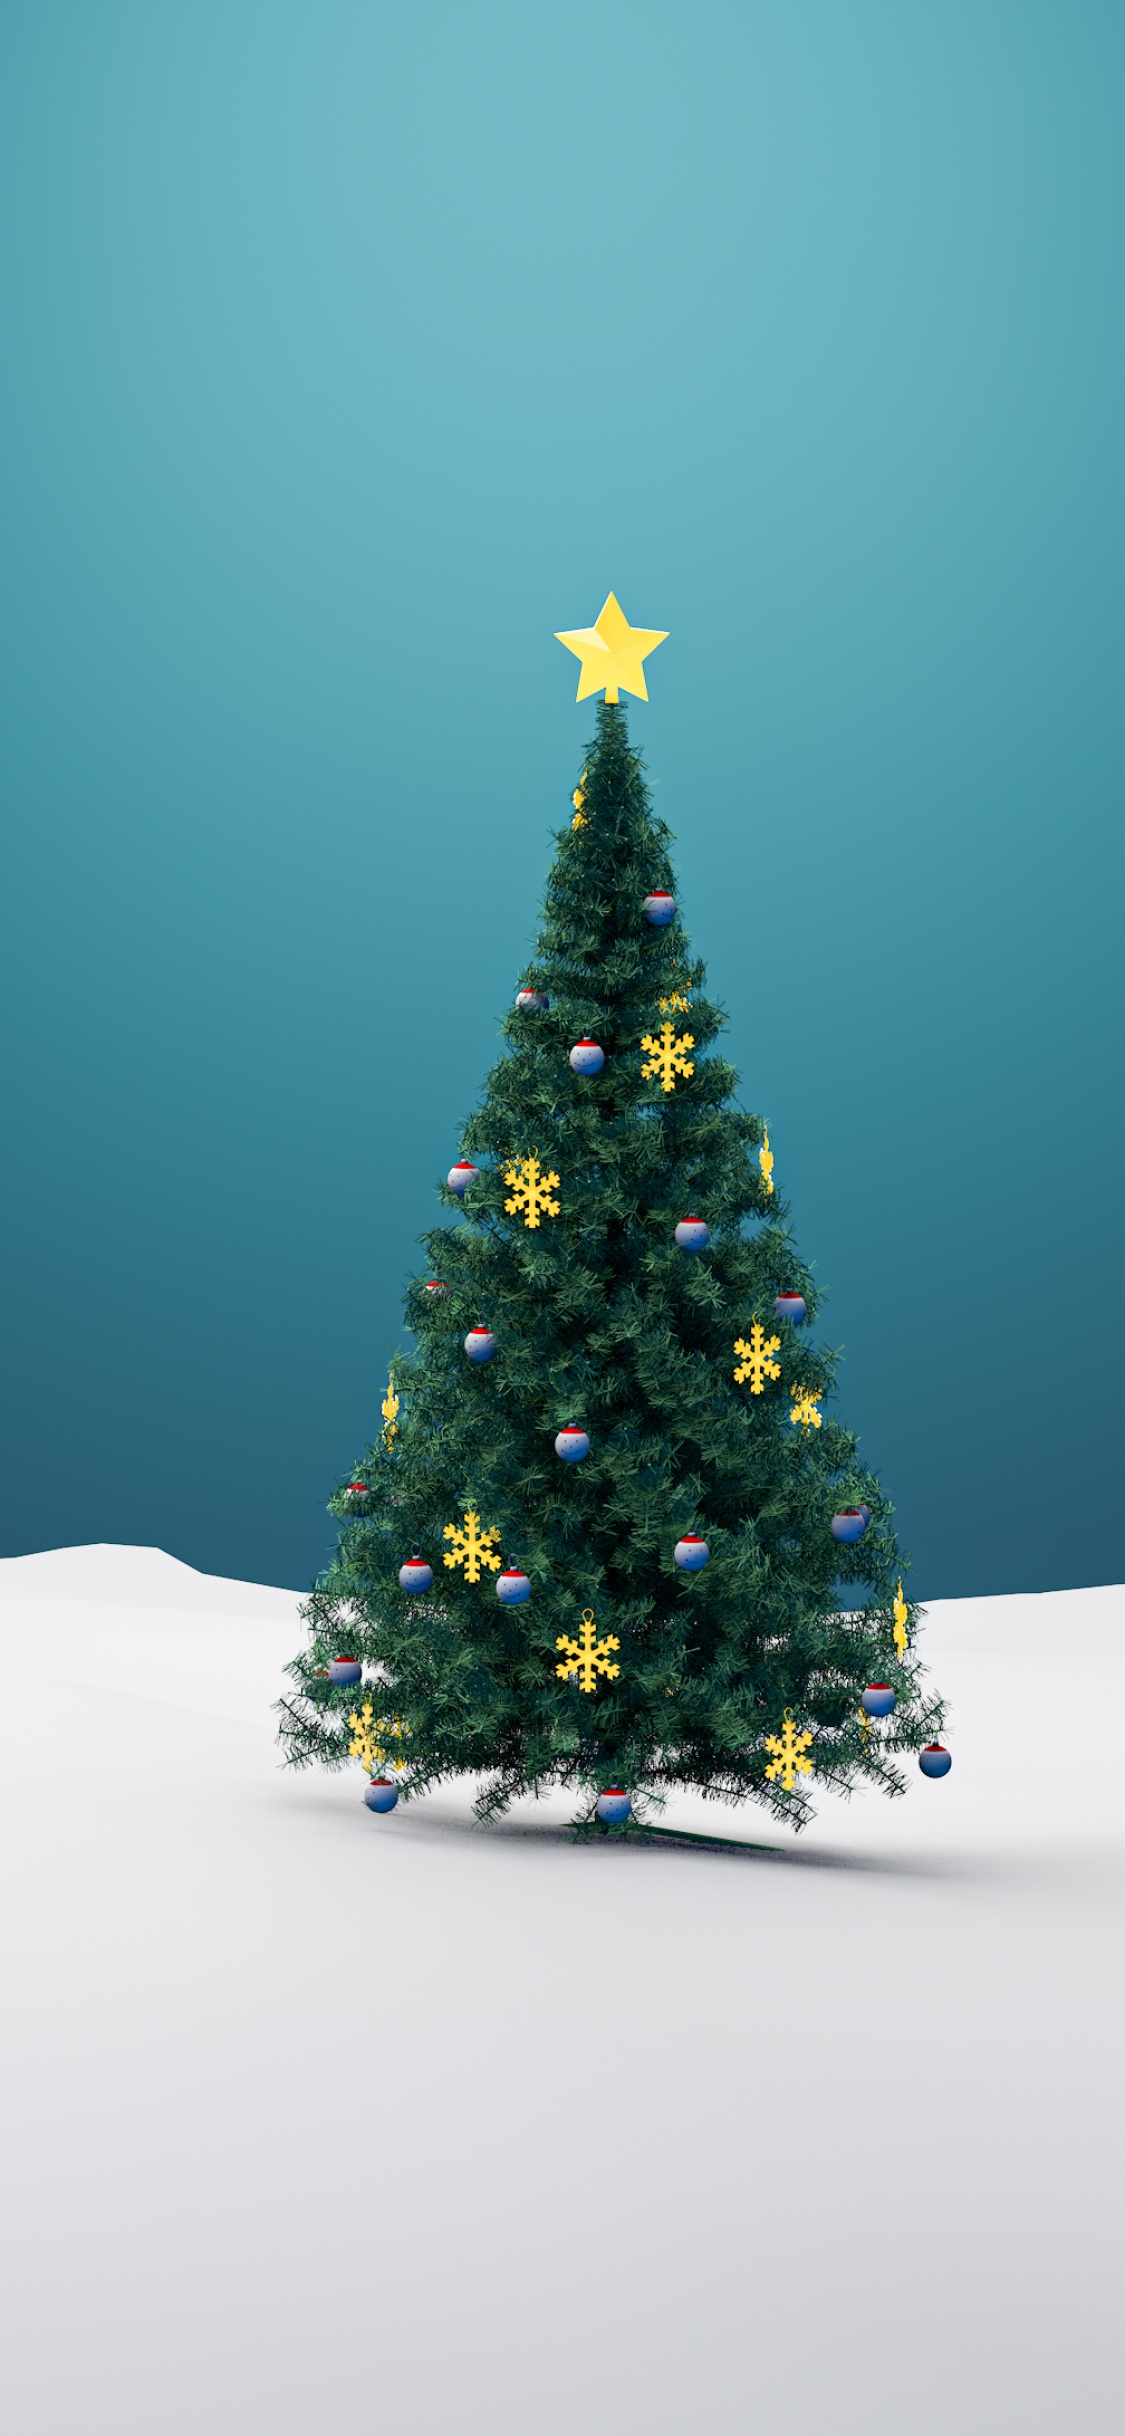 Mùa Giáng Sinh không thể thiếu đi một cây thông trang trí lung linh. Sử dụng hình nền Cây thông Giáng Sinh để trang trí cho màn hình của bạn, thêm phần ấm áp và lãng mạn cho không gian sống của bạn.